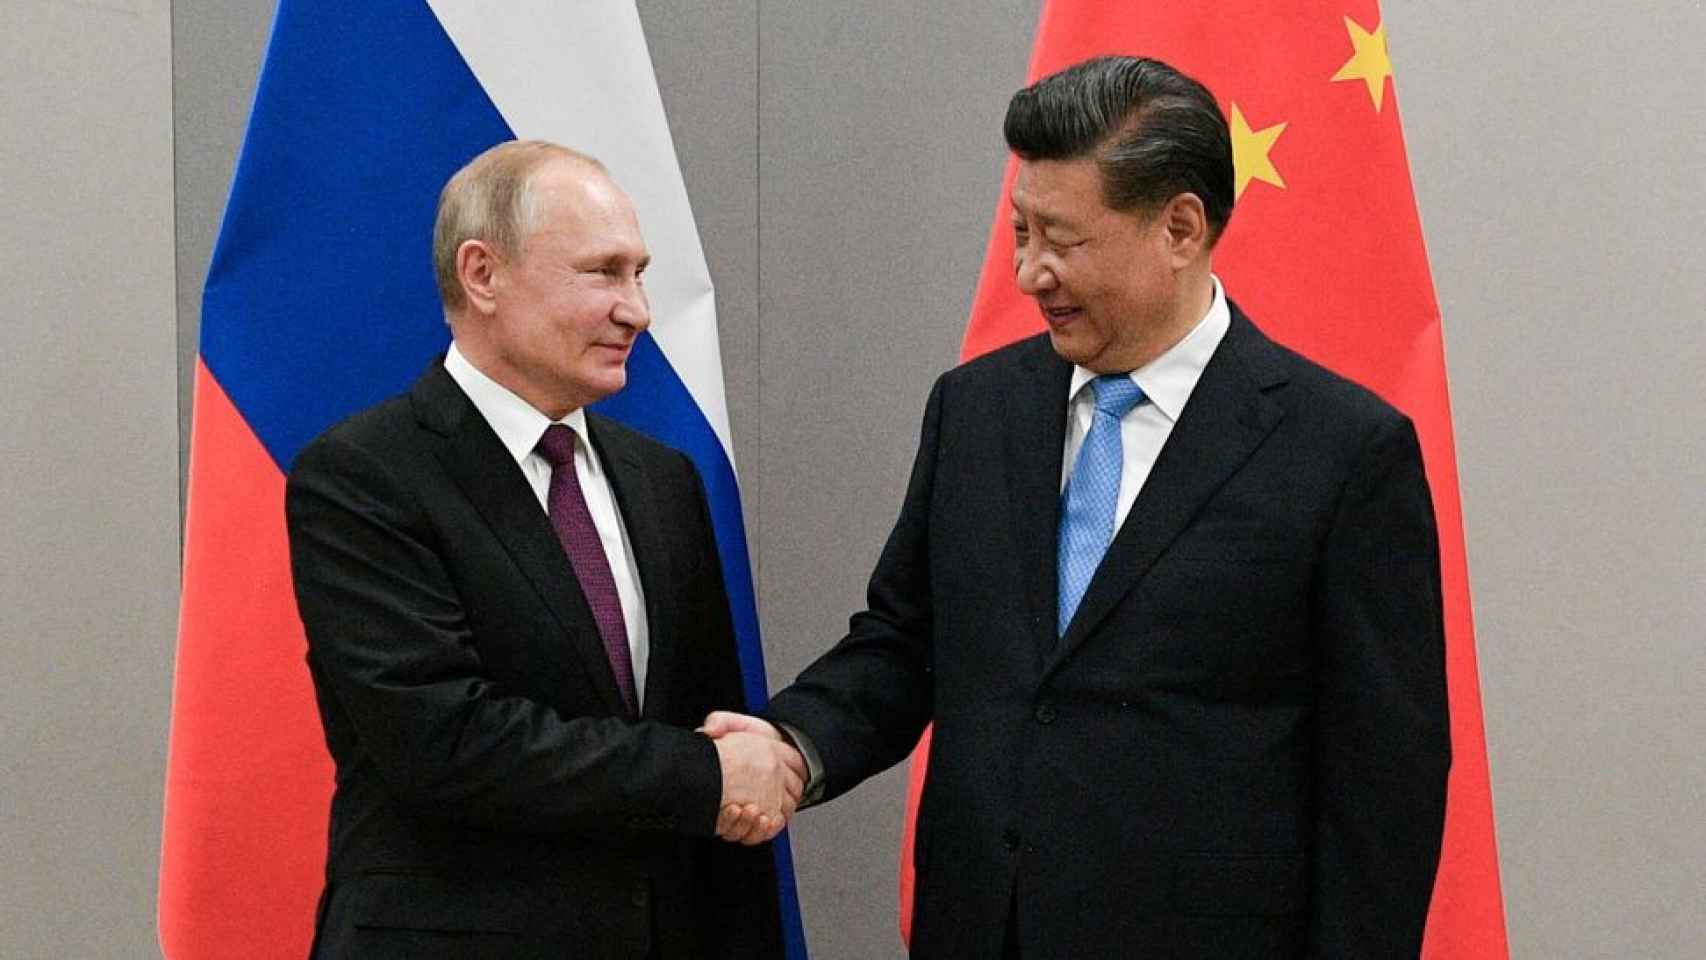 Vladimir Putin y Xi Jinping se dan la mano durante una reunión antes de la pandemia.